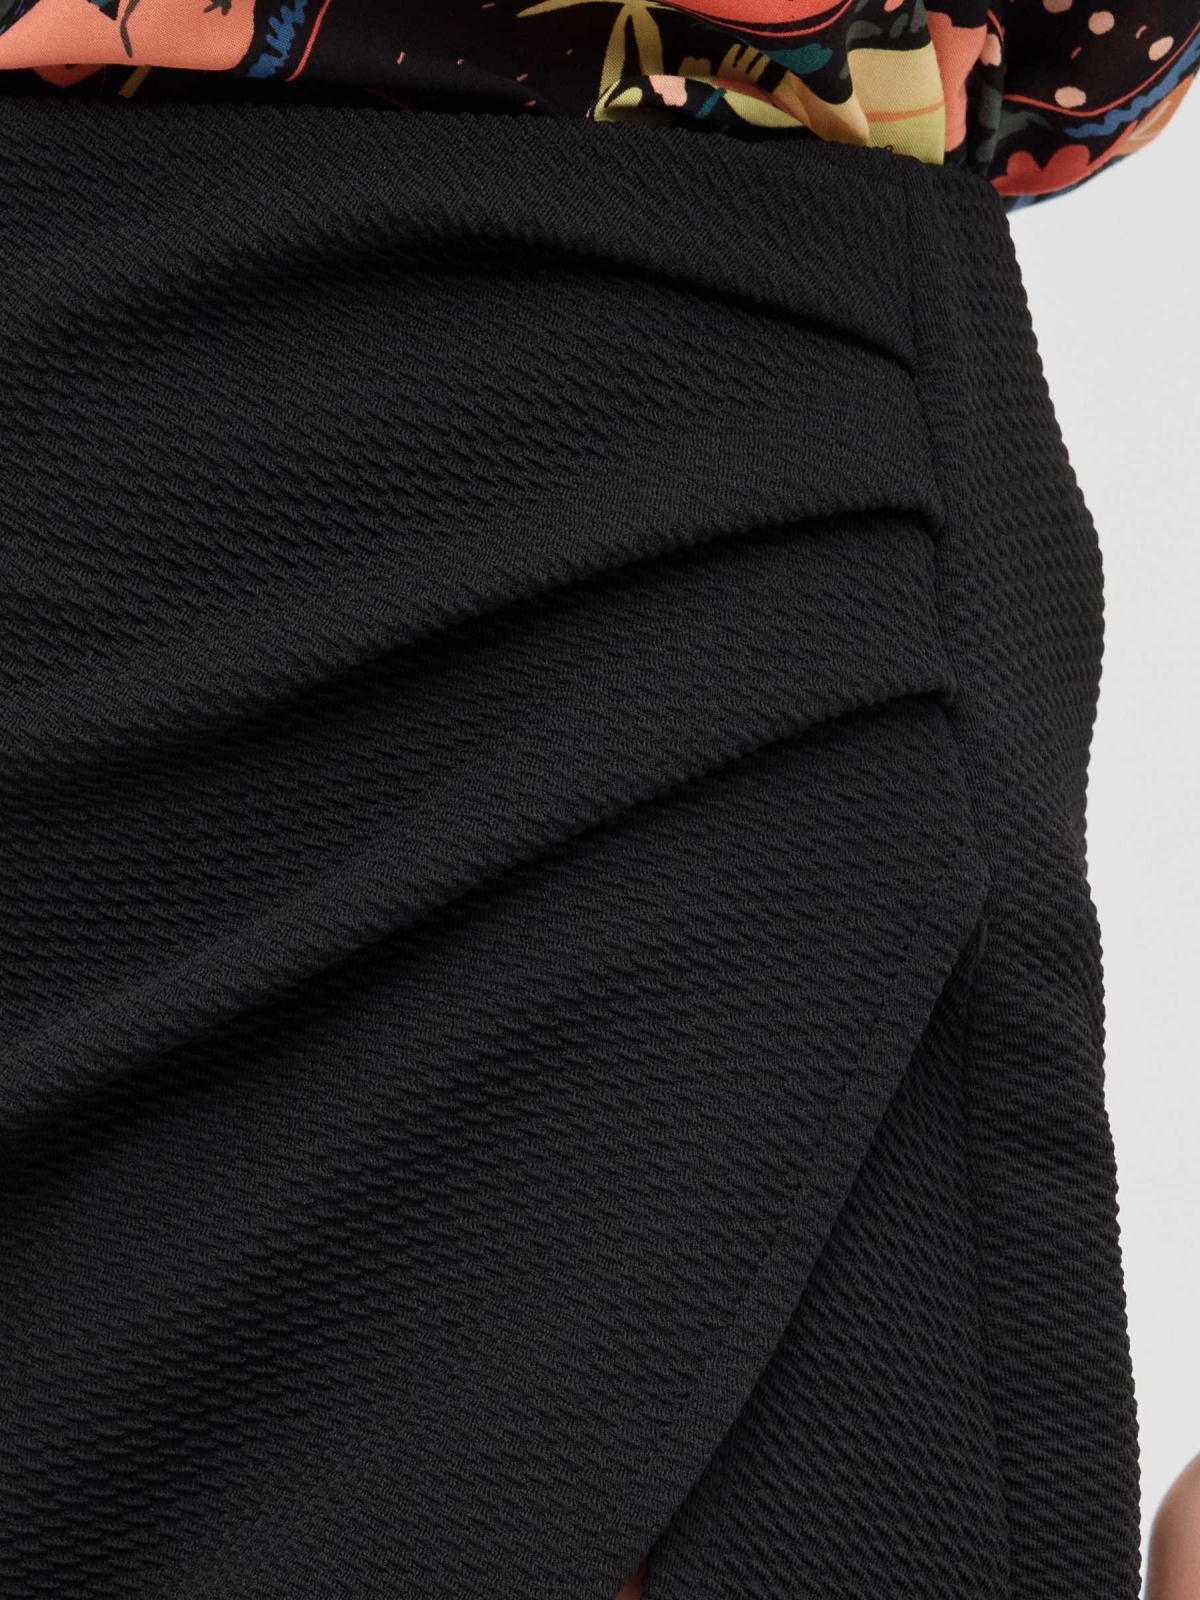 Falda pantalón mini negro vista detalle